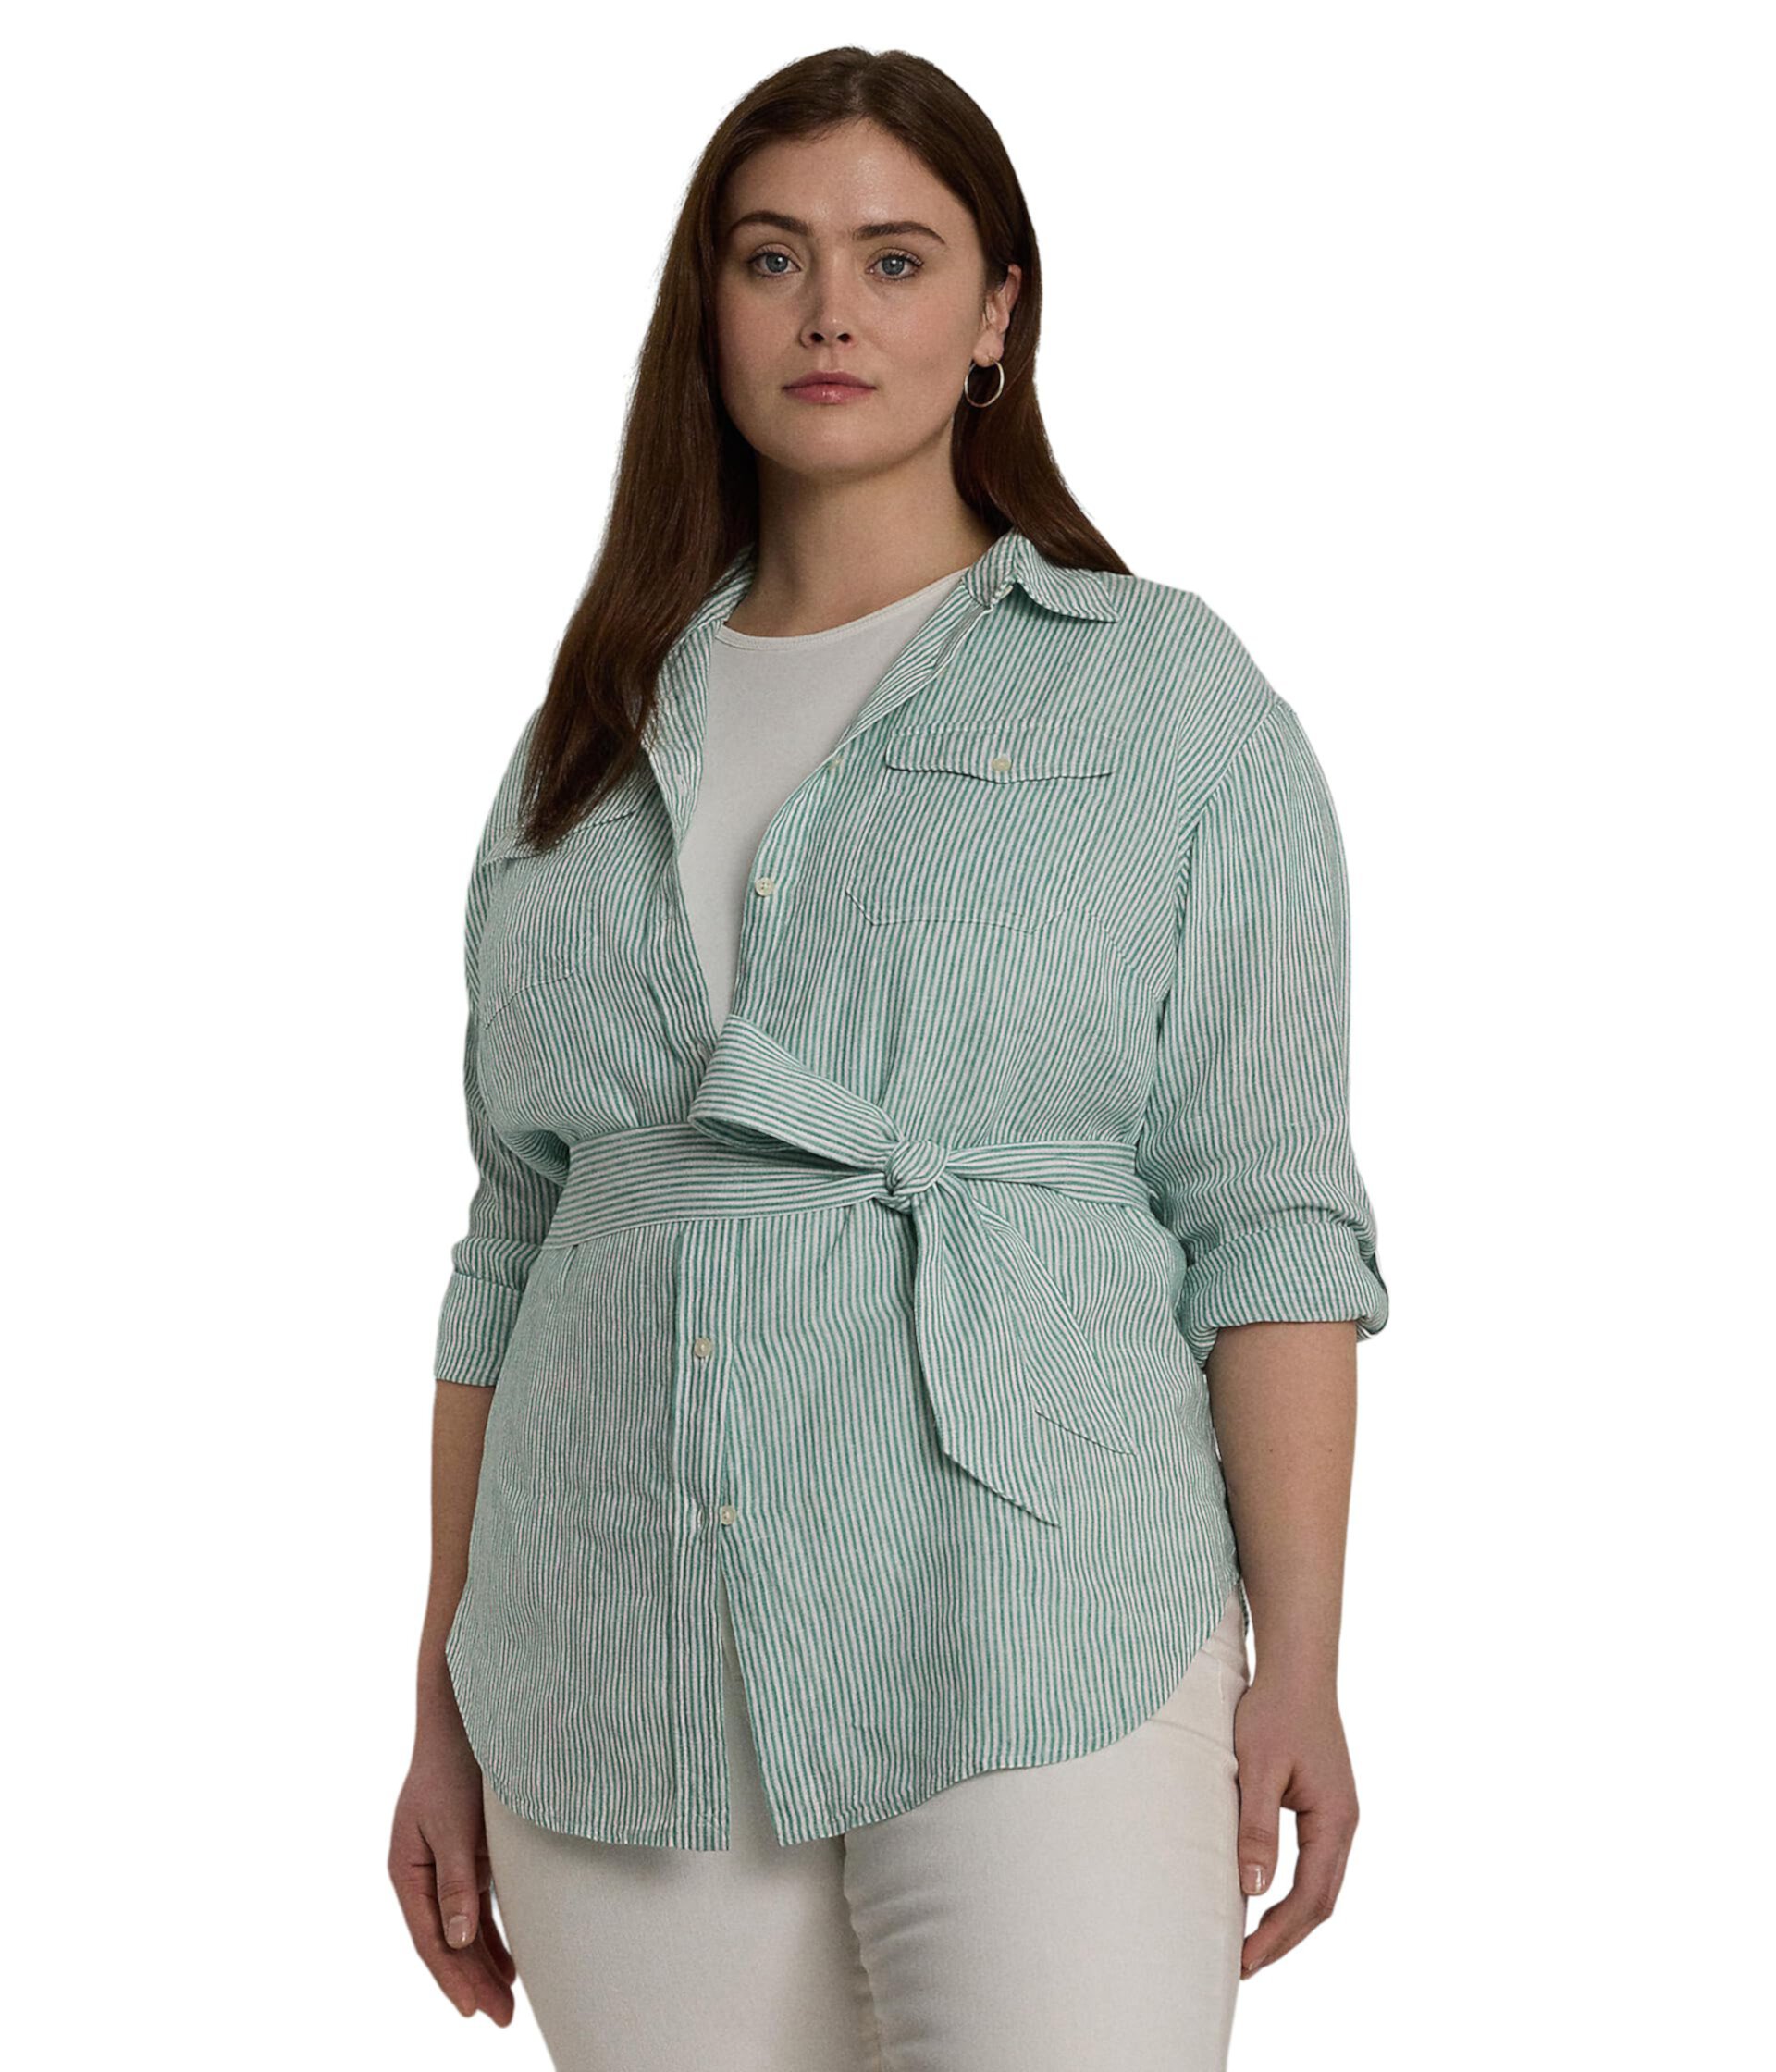 Льняная рубашка свободного кроя в полоску с поясом больших размеров LAUREN Ralph Lauren